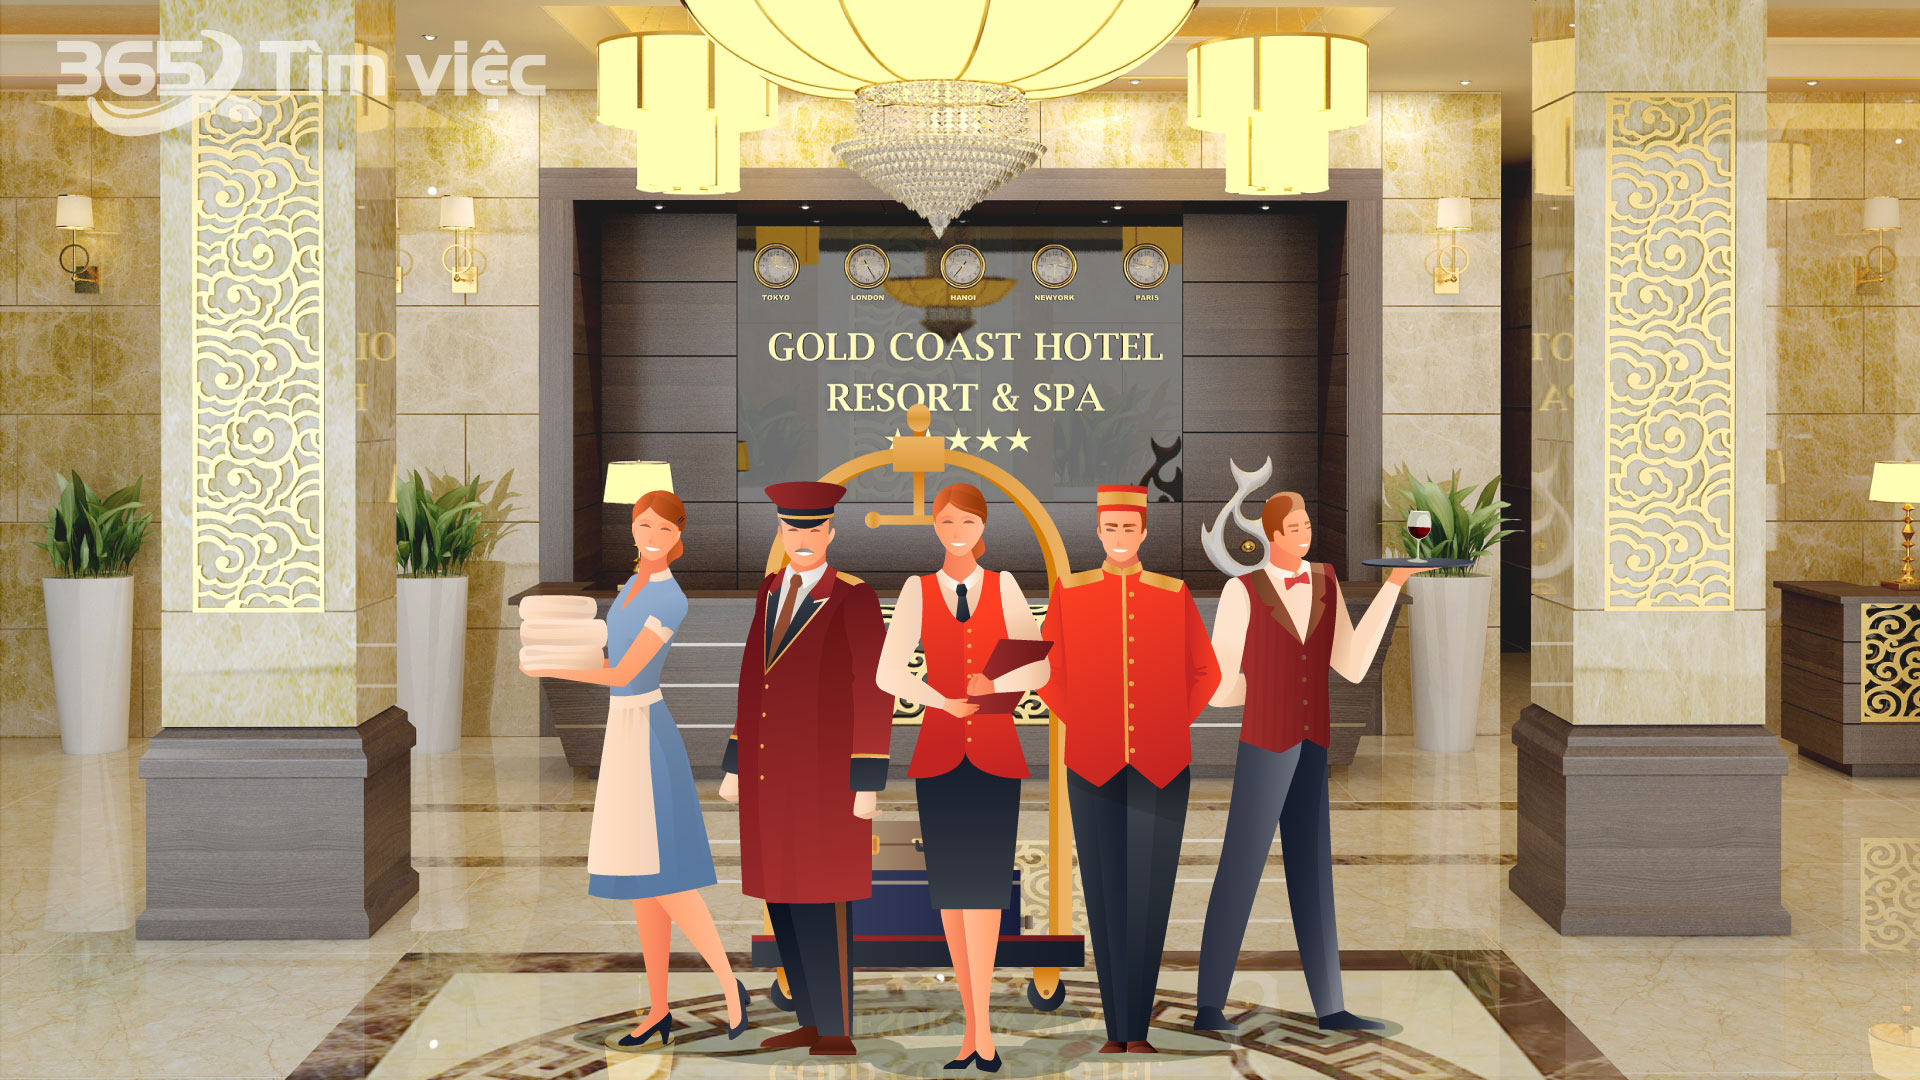 Dọn phòng khách sạn là một công việc cần tính toán kỹ lưỡng và tận tâm để mang lại sự hài lòng cho khách hàng. Cùng xem ngay hình ảnh về quy trình dọn phòng khách sạn chuyên nghiệp để tăng cường chất lượng dịch vụ của bạn.